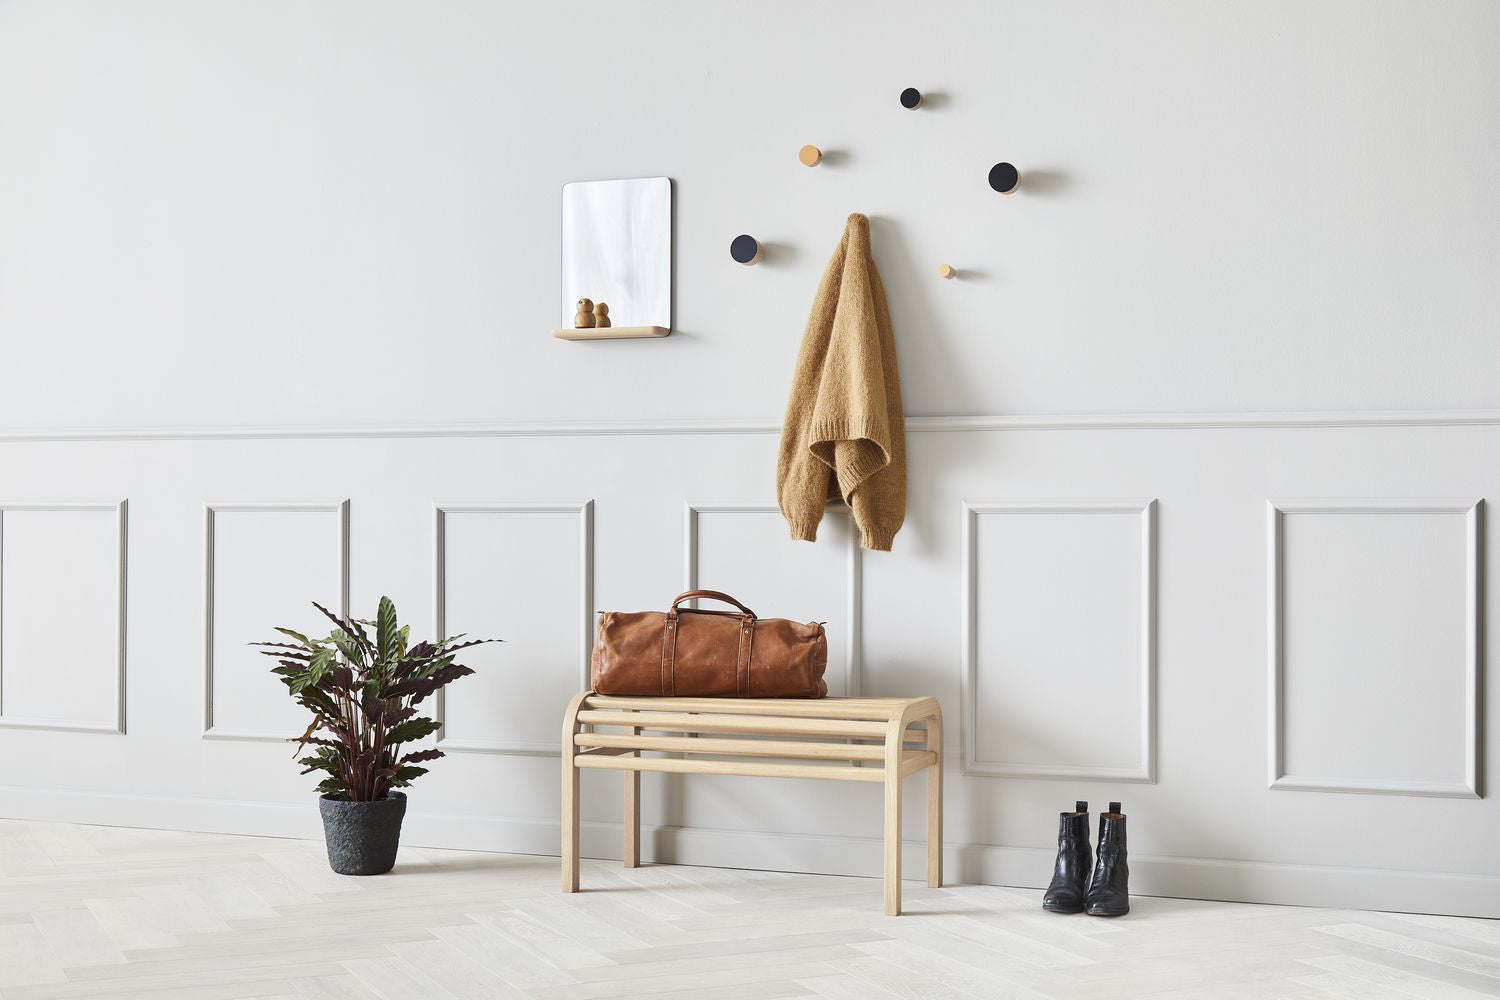 Andersen Furniture Contrast haakset van 2 Ø3 cm, eiken/beige